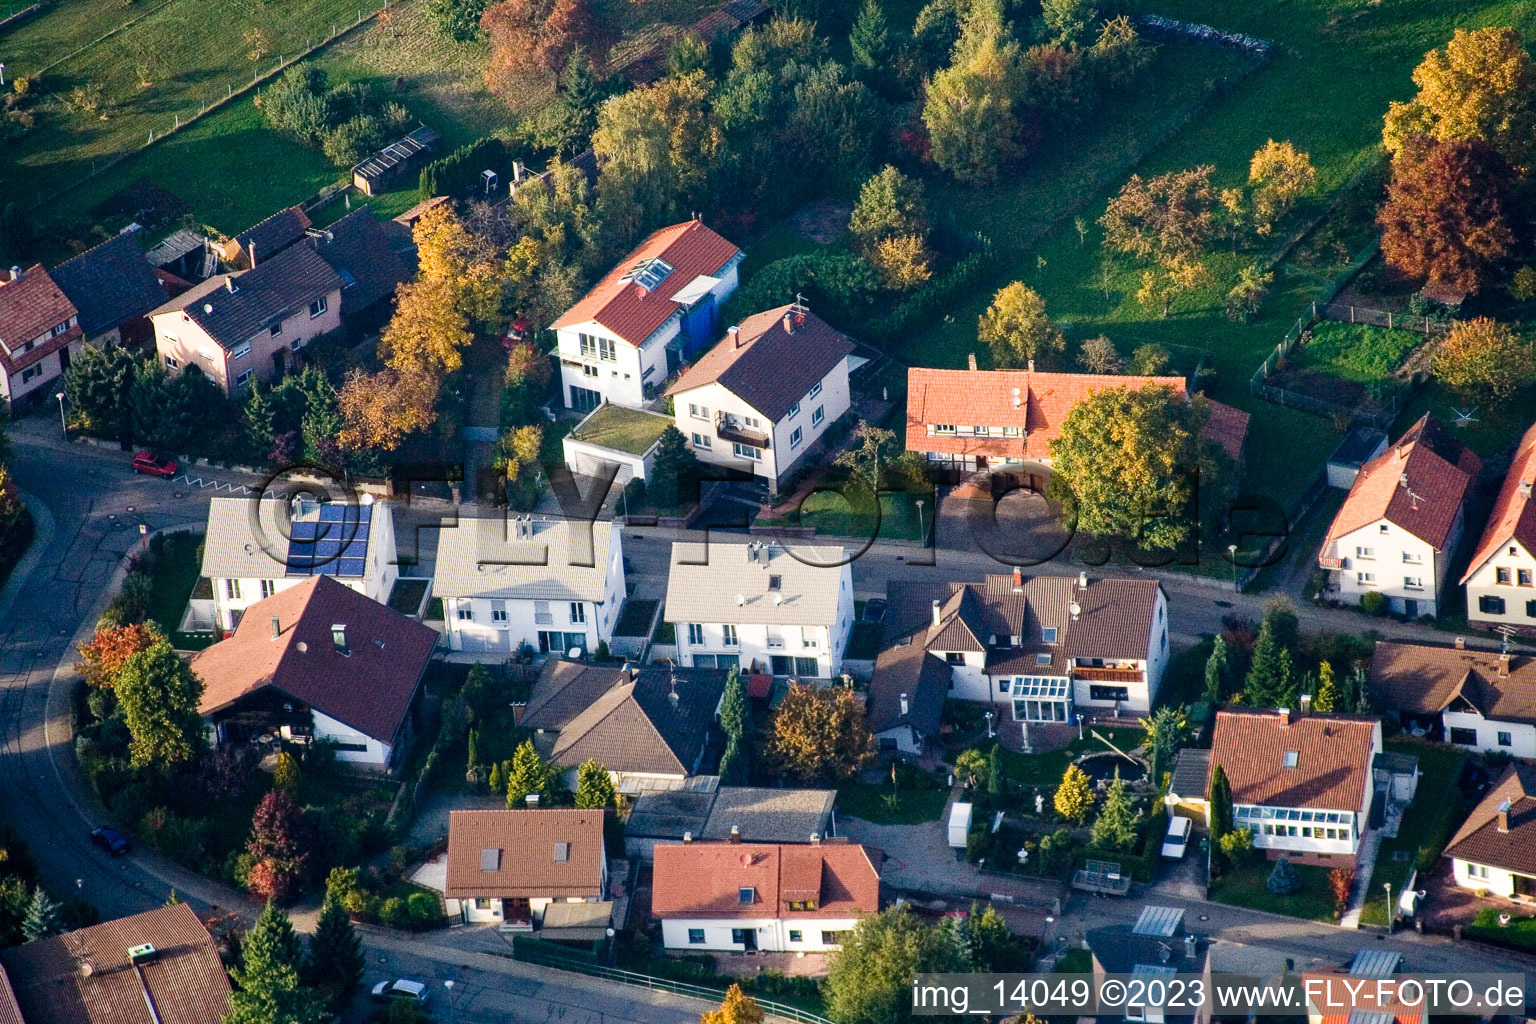 District Schöllbronn in Ettlingen in the state Baden-Wuerttemberg, Germany seen from a drone